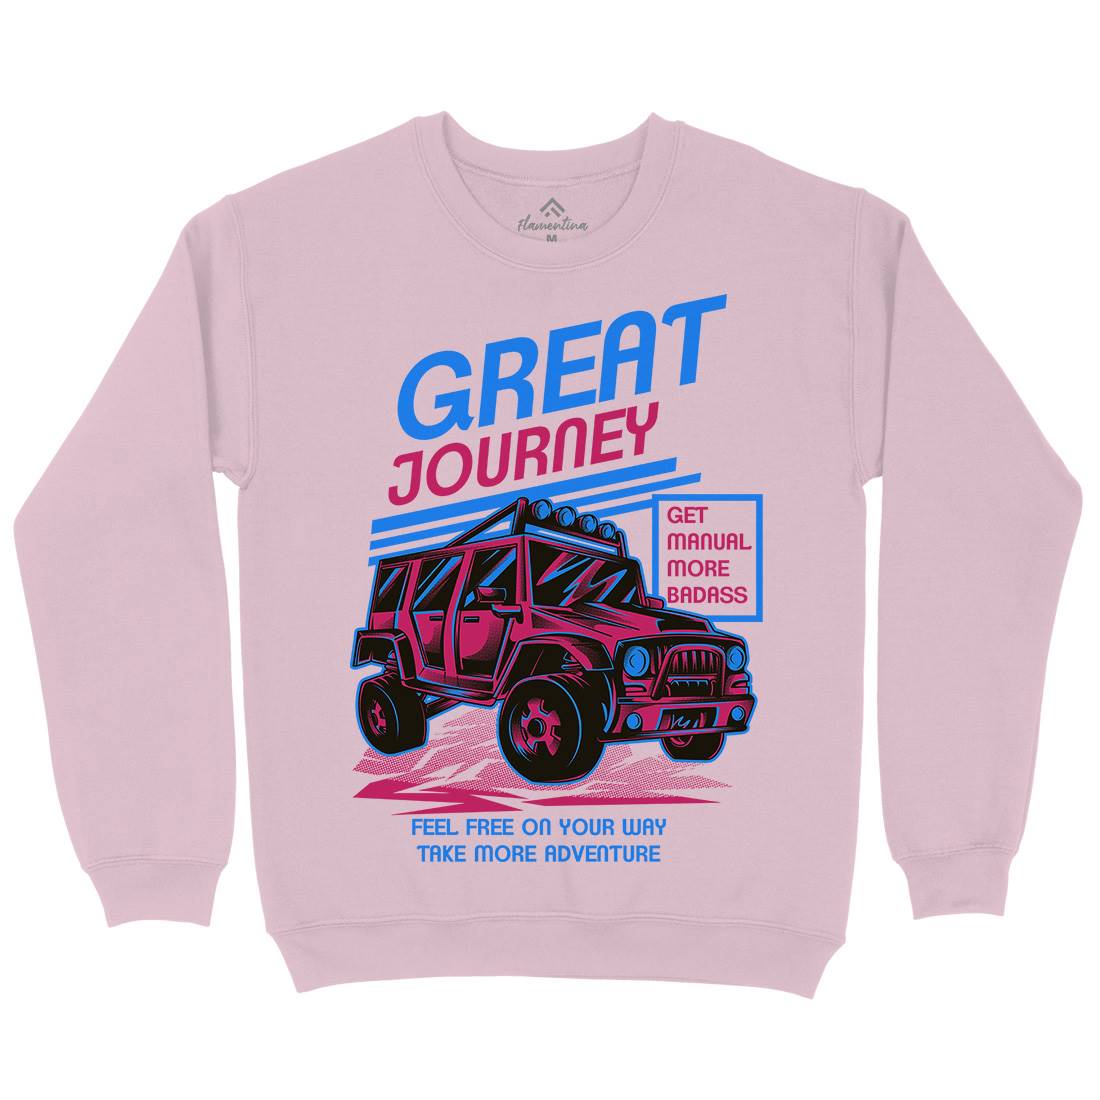 Great Journey Kids Crew Neck Sweatshirt Cars D600